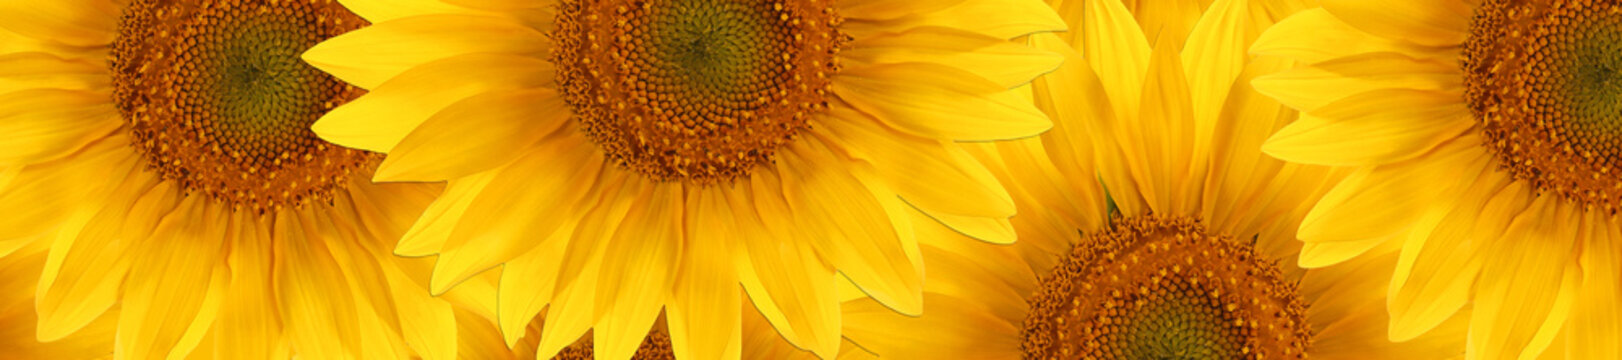  sunflower  summertime